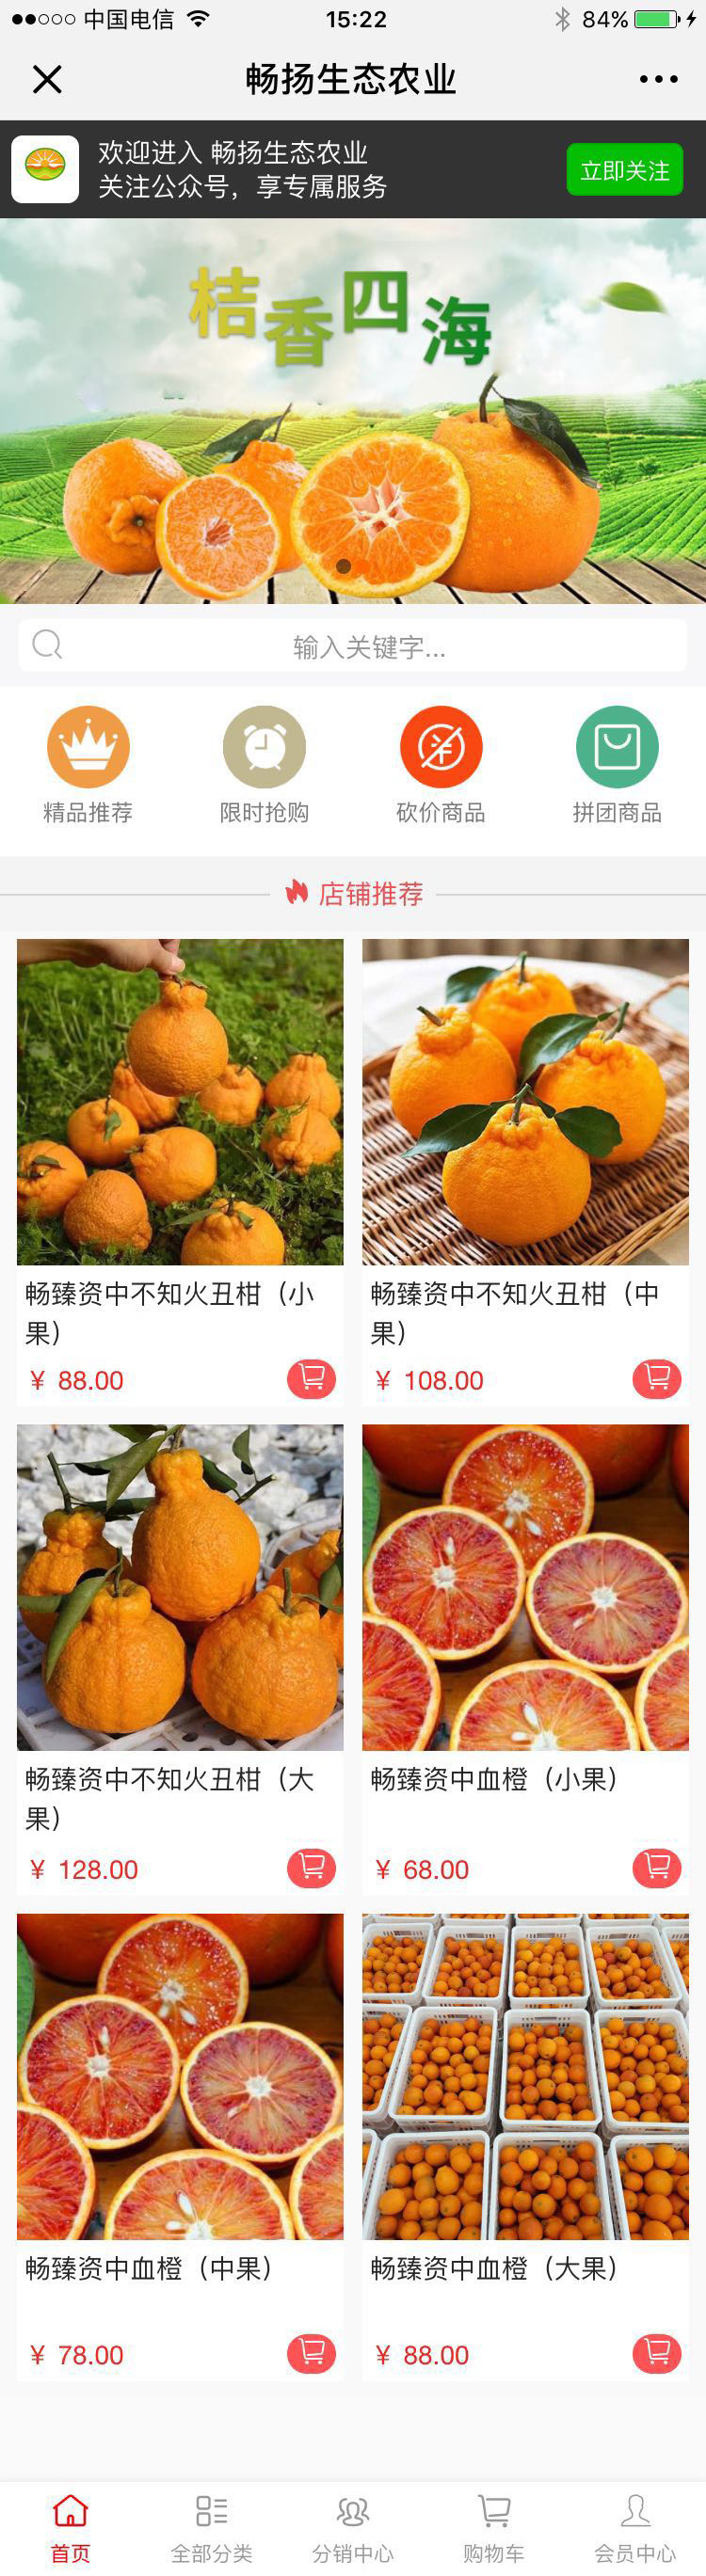 水果红色成都-成都畅扬生态农业微分销高级版.jpg